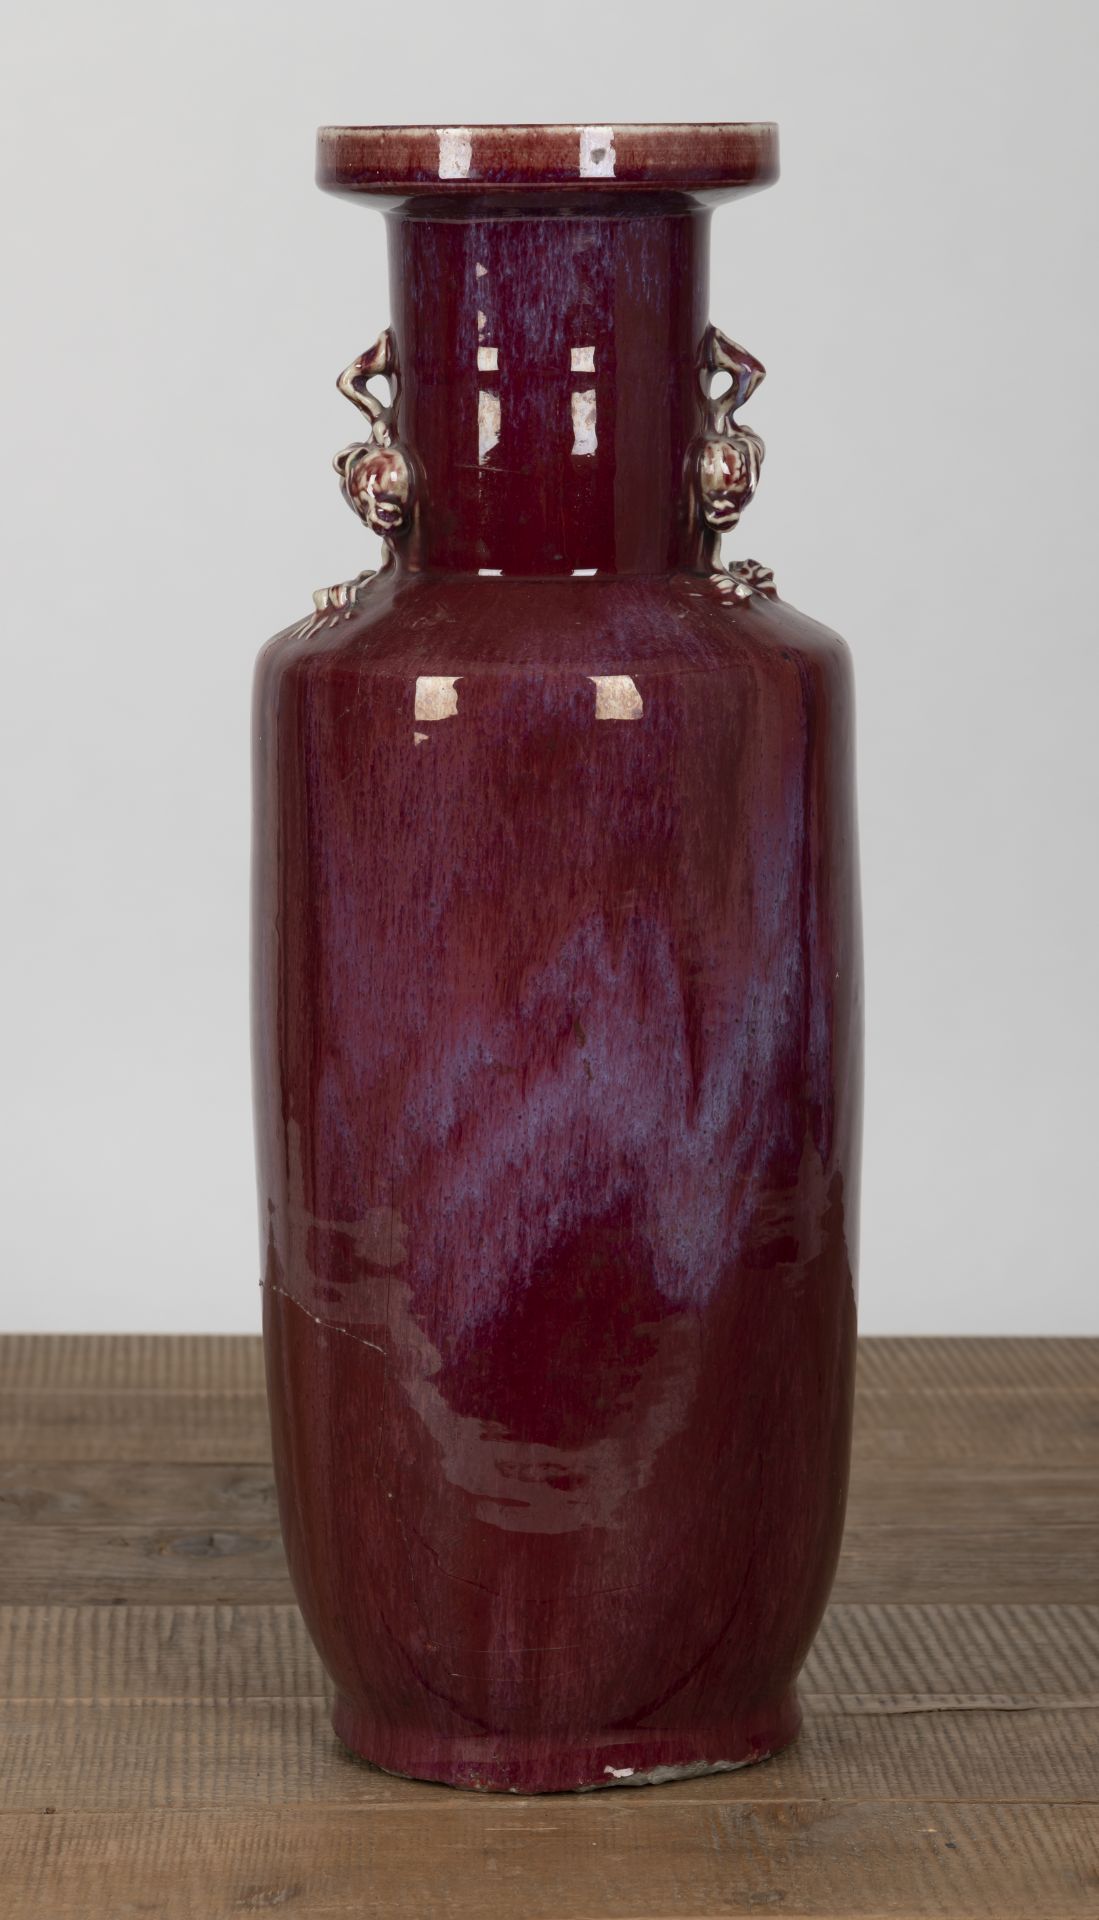 Rouleau-Vase mit Flambé-Glasur und pfirsichförmigen Handhaben - Bild 2 aus 4